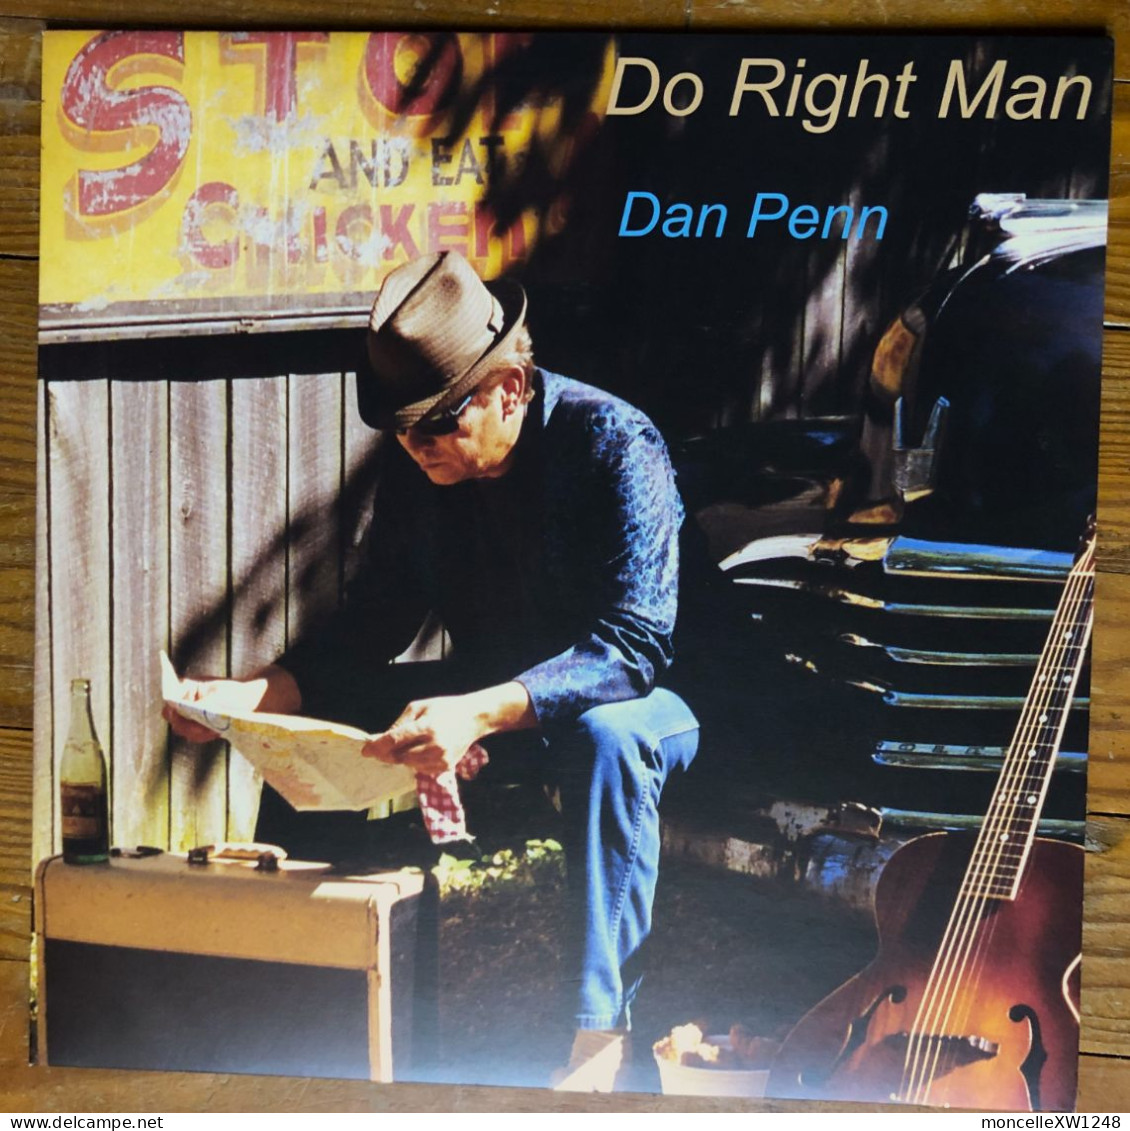 Dan Penn - 33 T LP Do Right Man (2013) - Country Et Folk